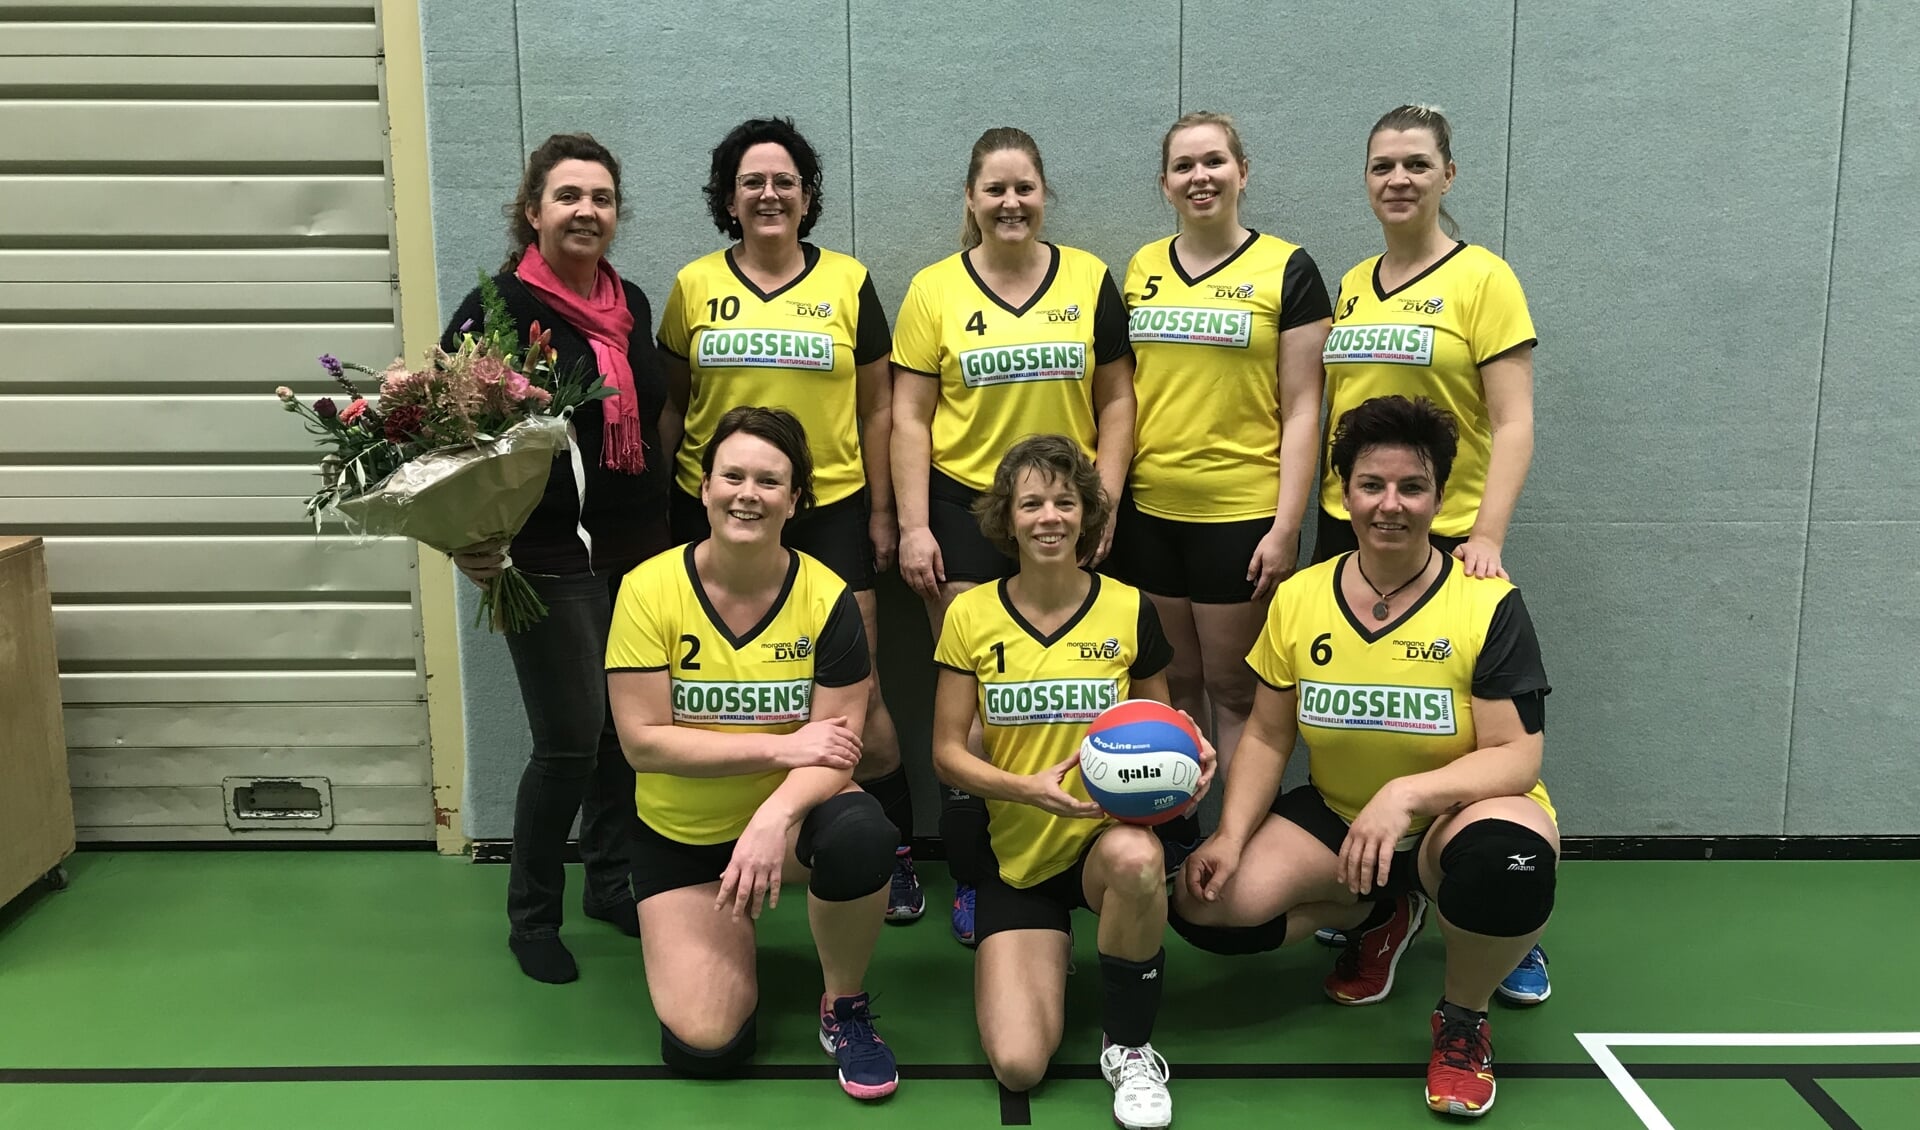 Coach en sponsor Germaine Goossens in de bloemen gezet voor nieuwe shirts van Morgana DVO dames 6. Foto: PR